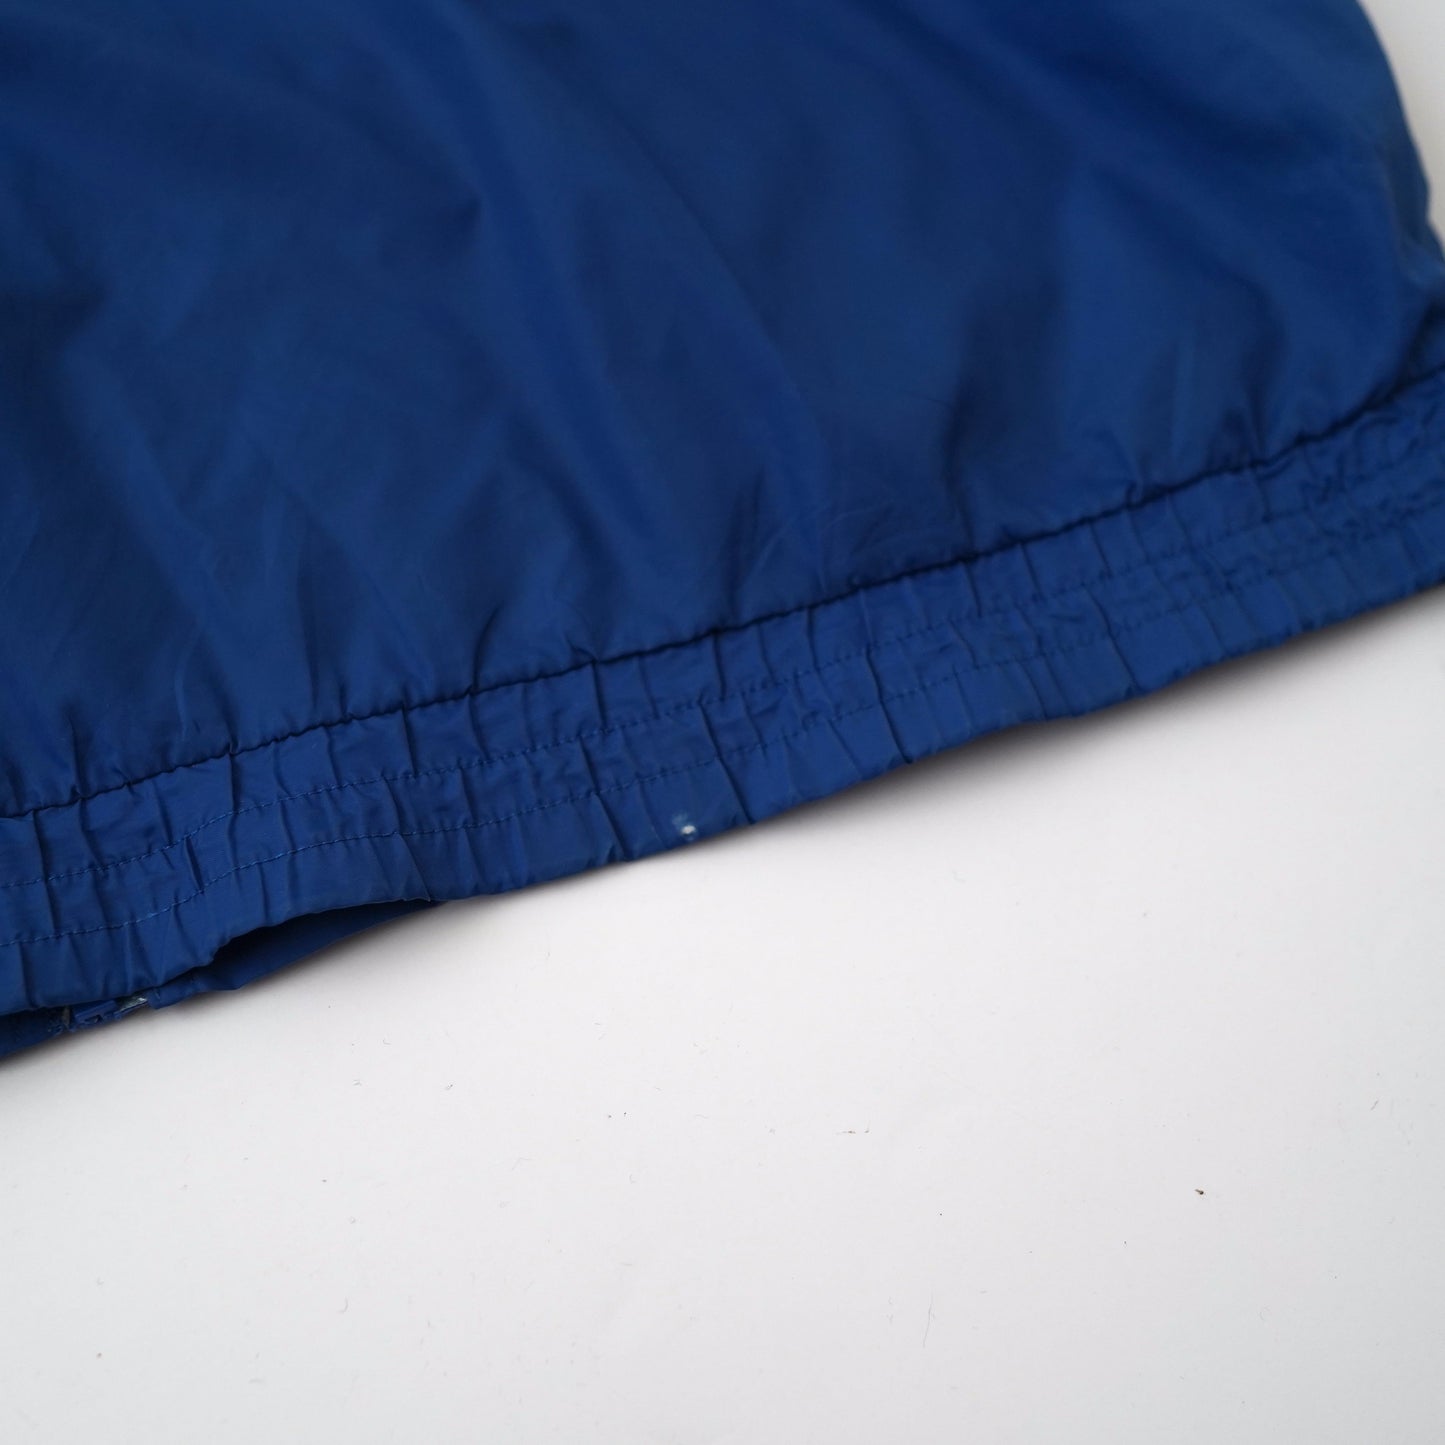 80s-90s PUMA nylon jacket